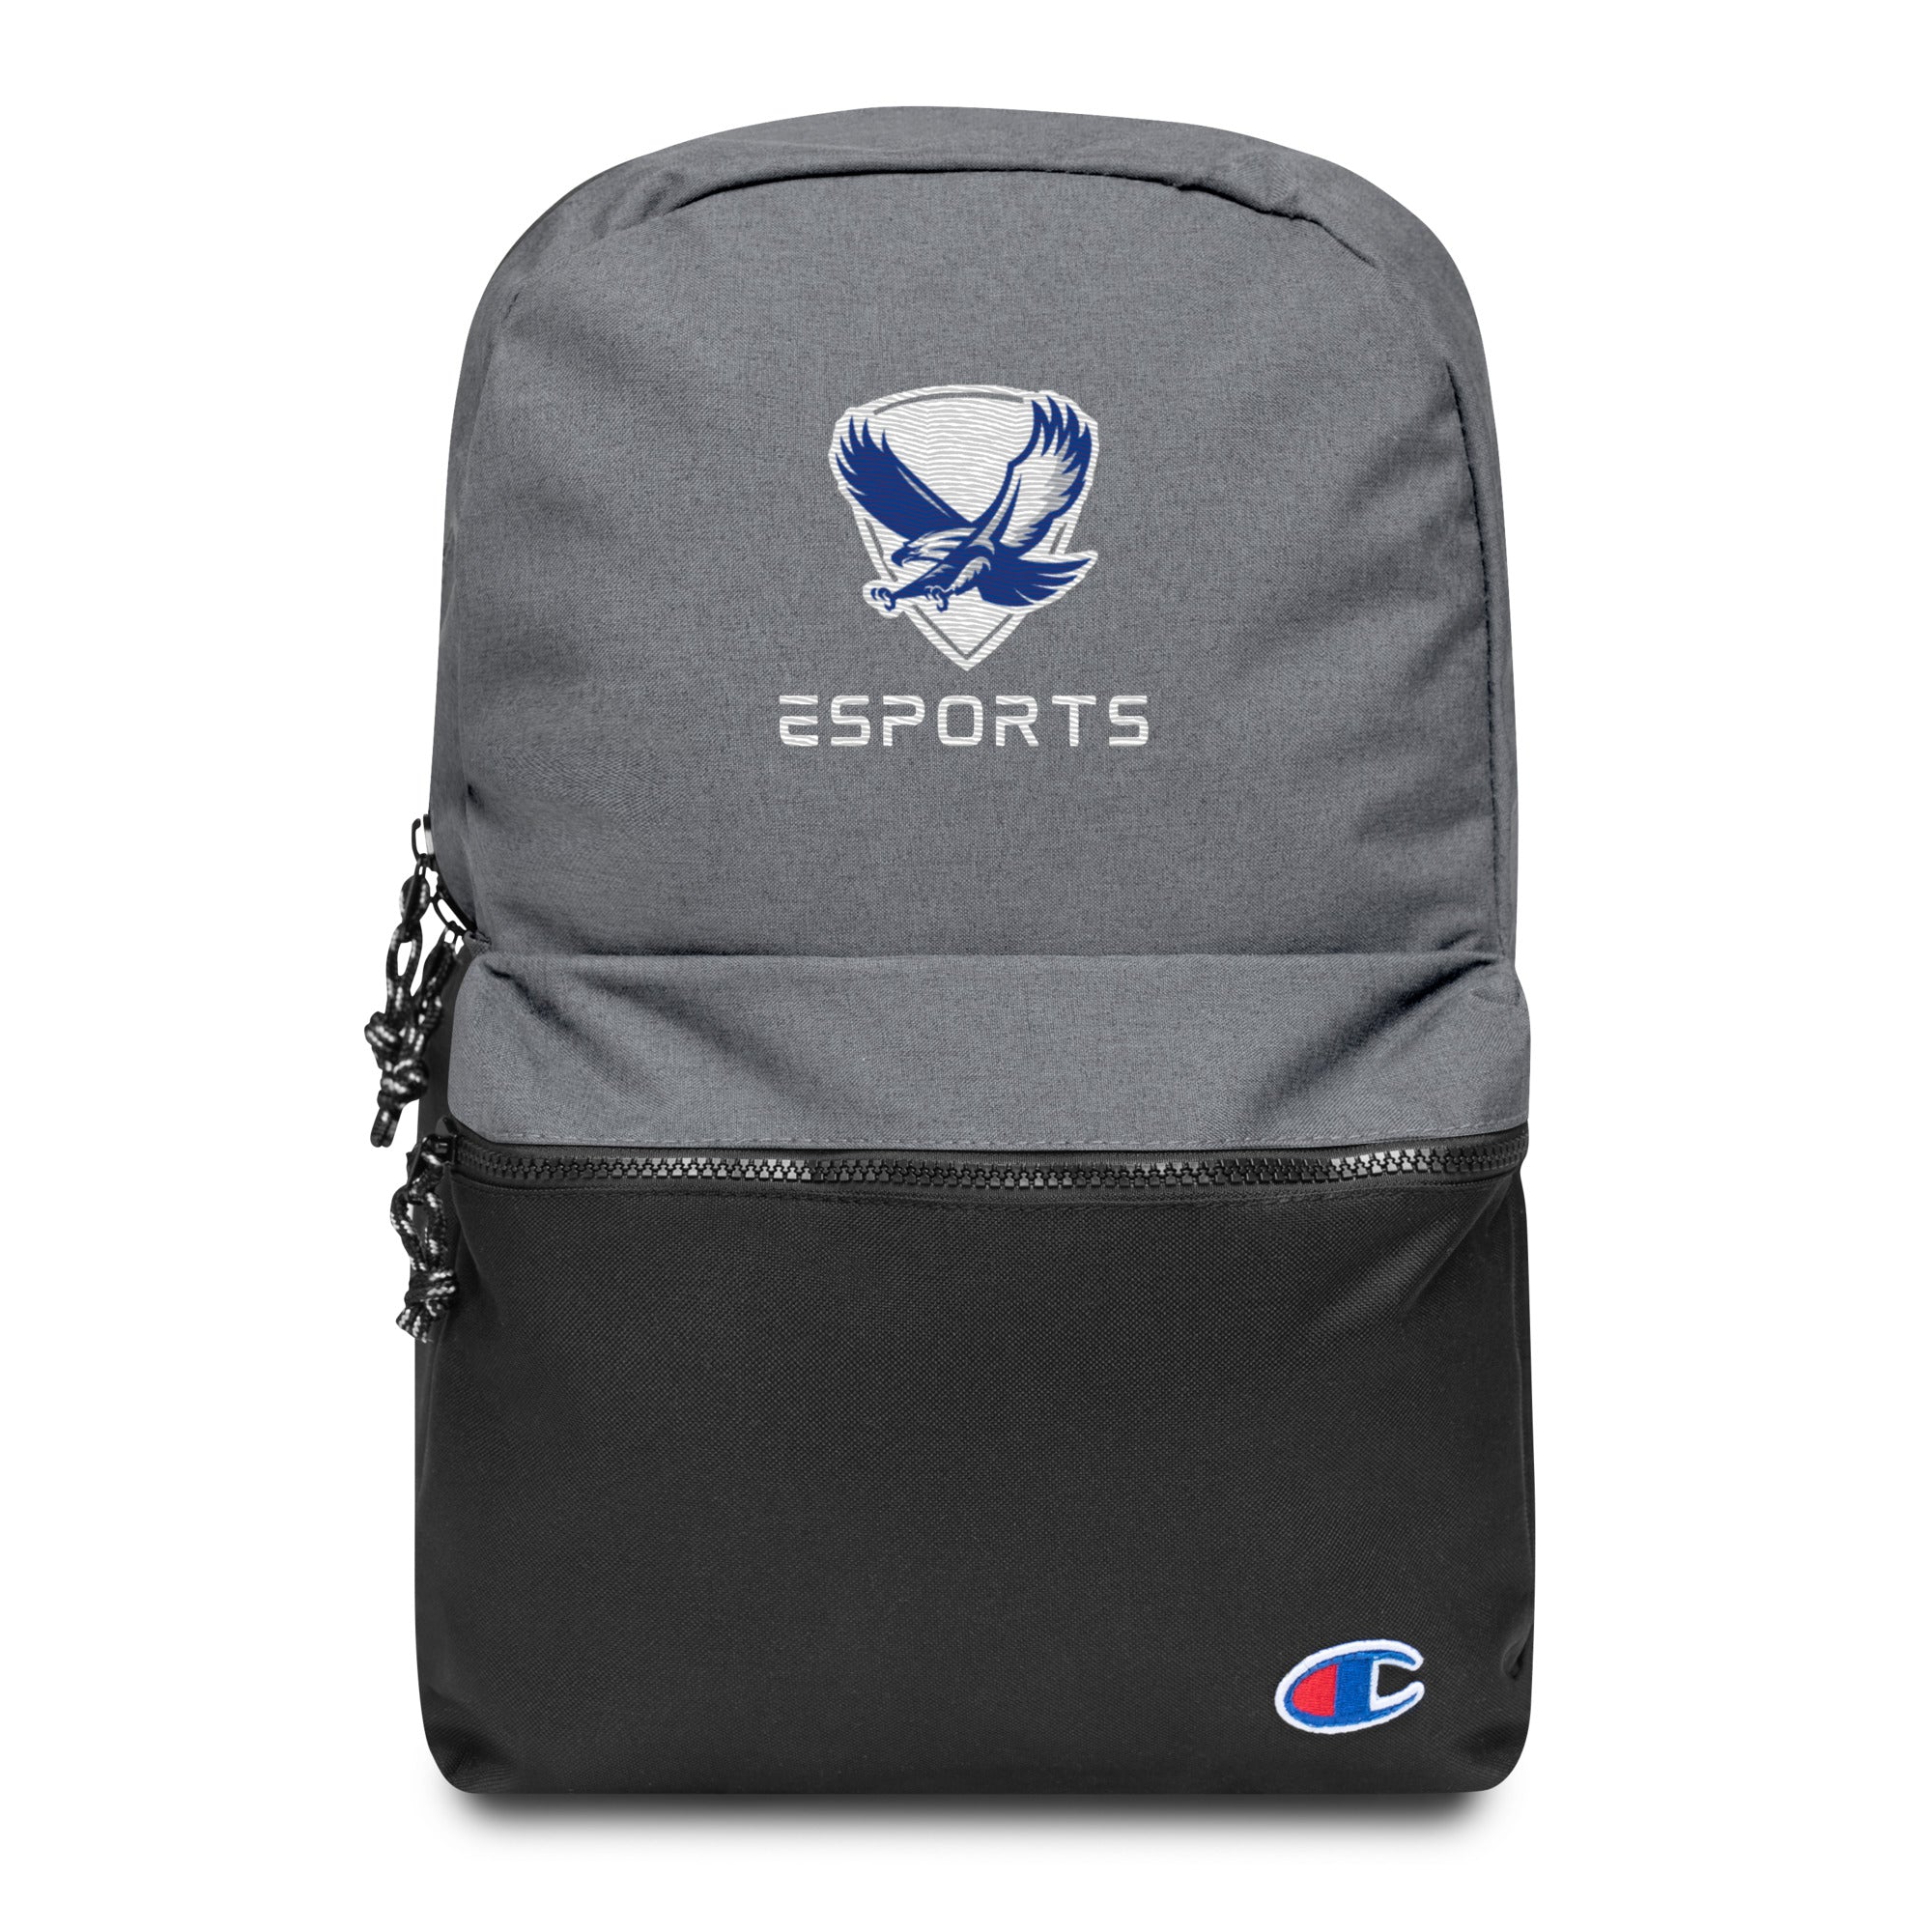 NAHS Esports Backpack